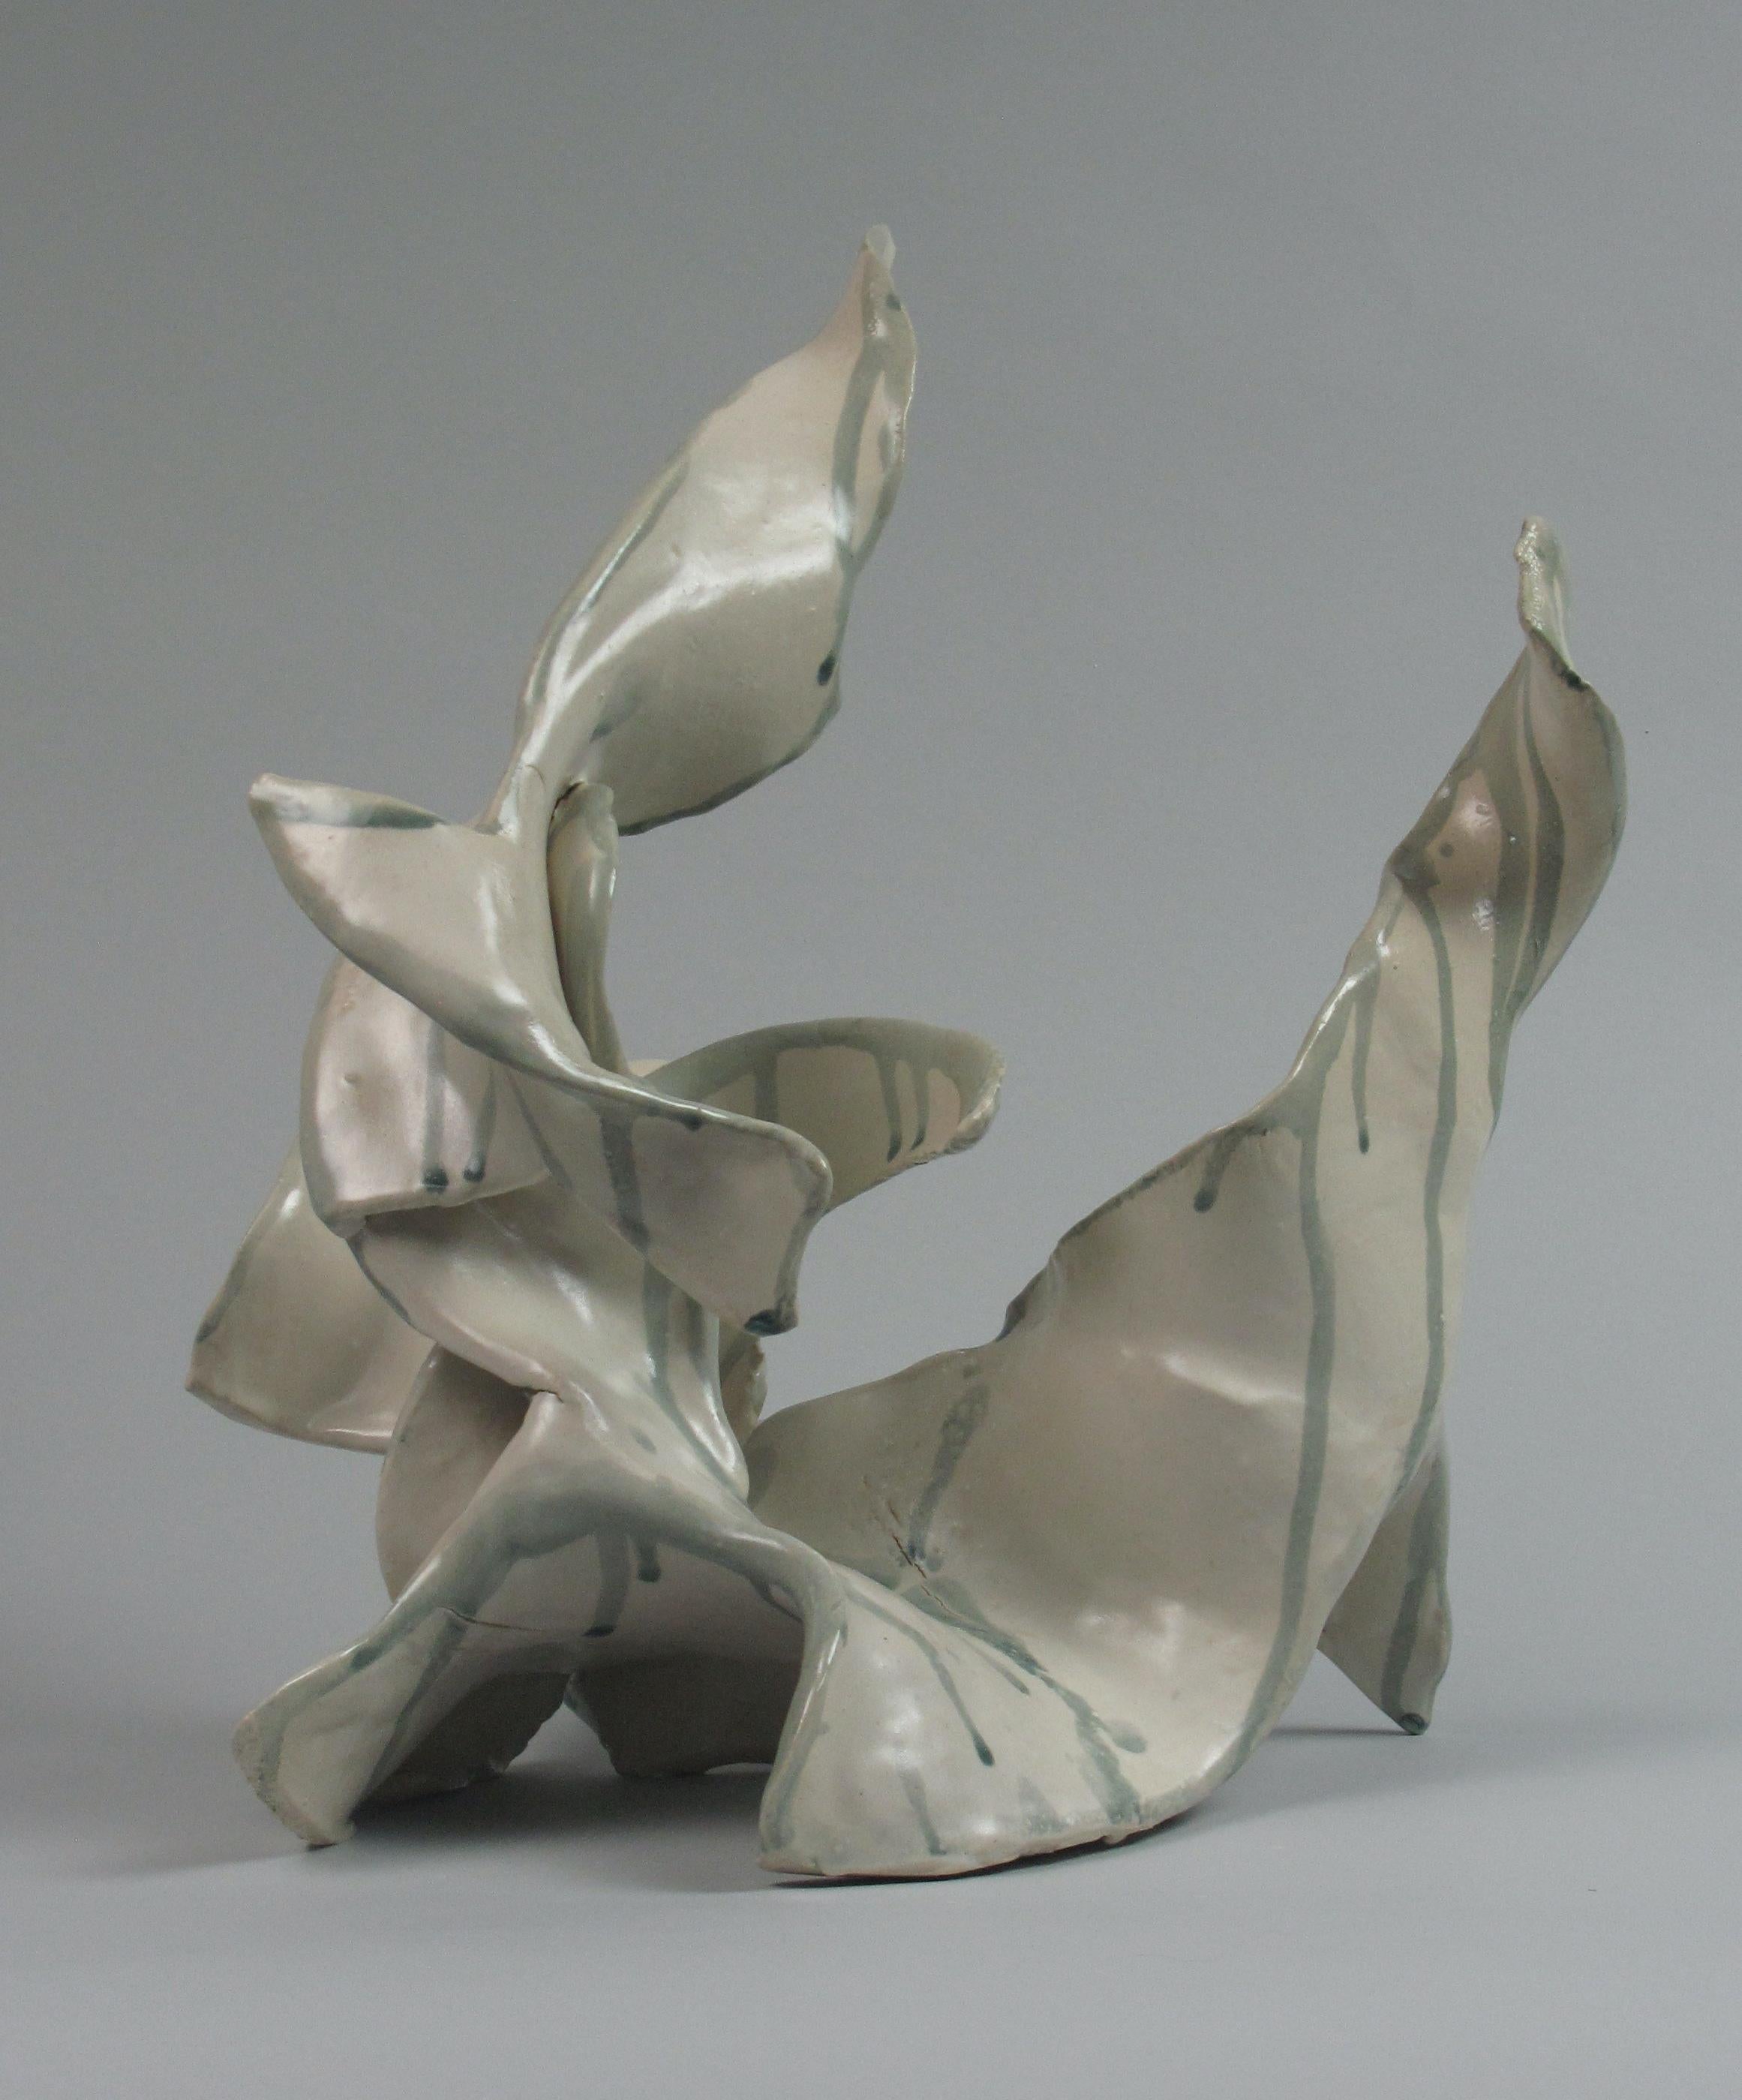 "Runny", gestural, ceramic, sculpture, white, cream, teal, stoneware - Sculpture by Sara Fine-Wilson